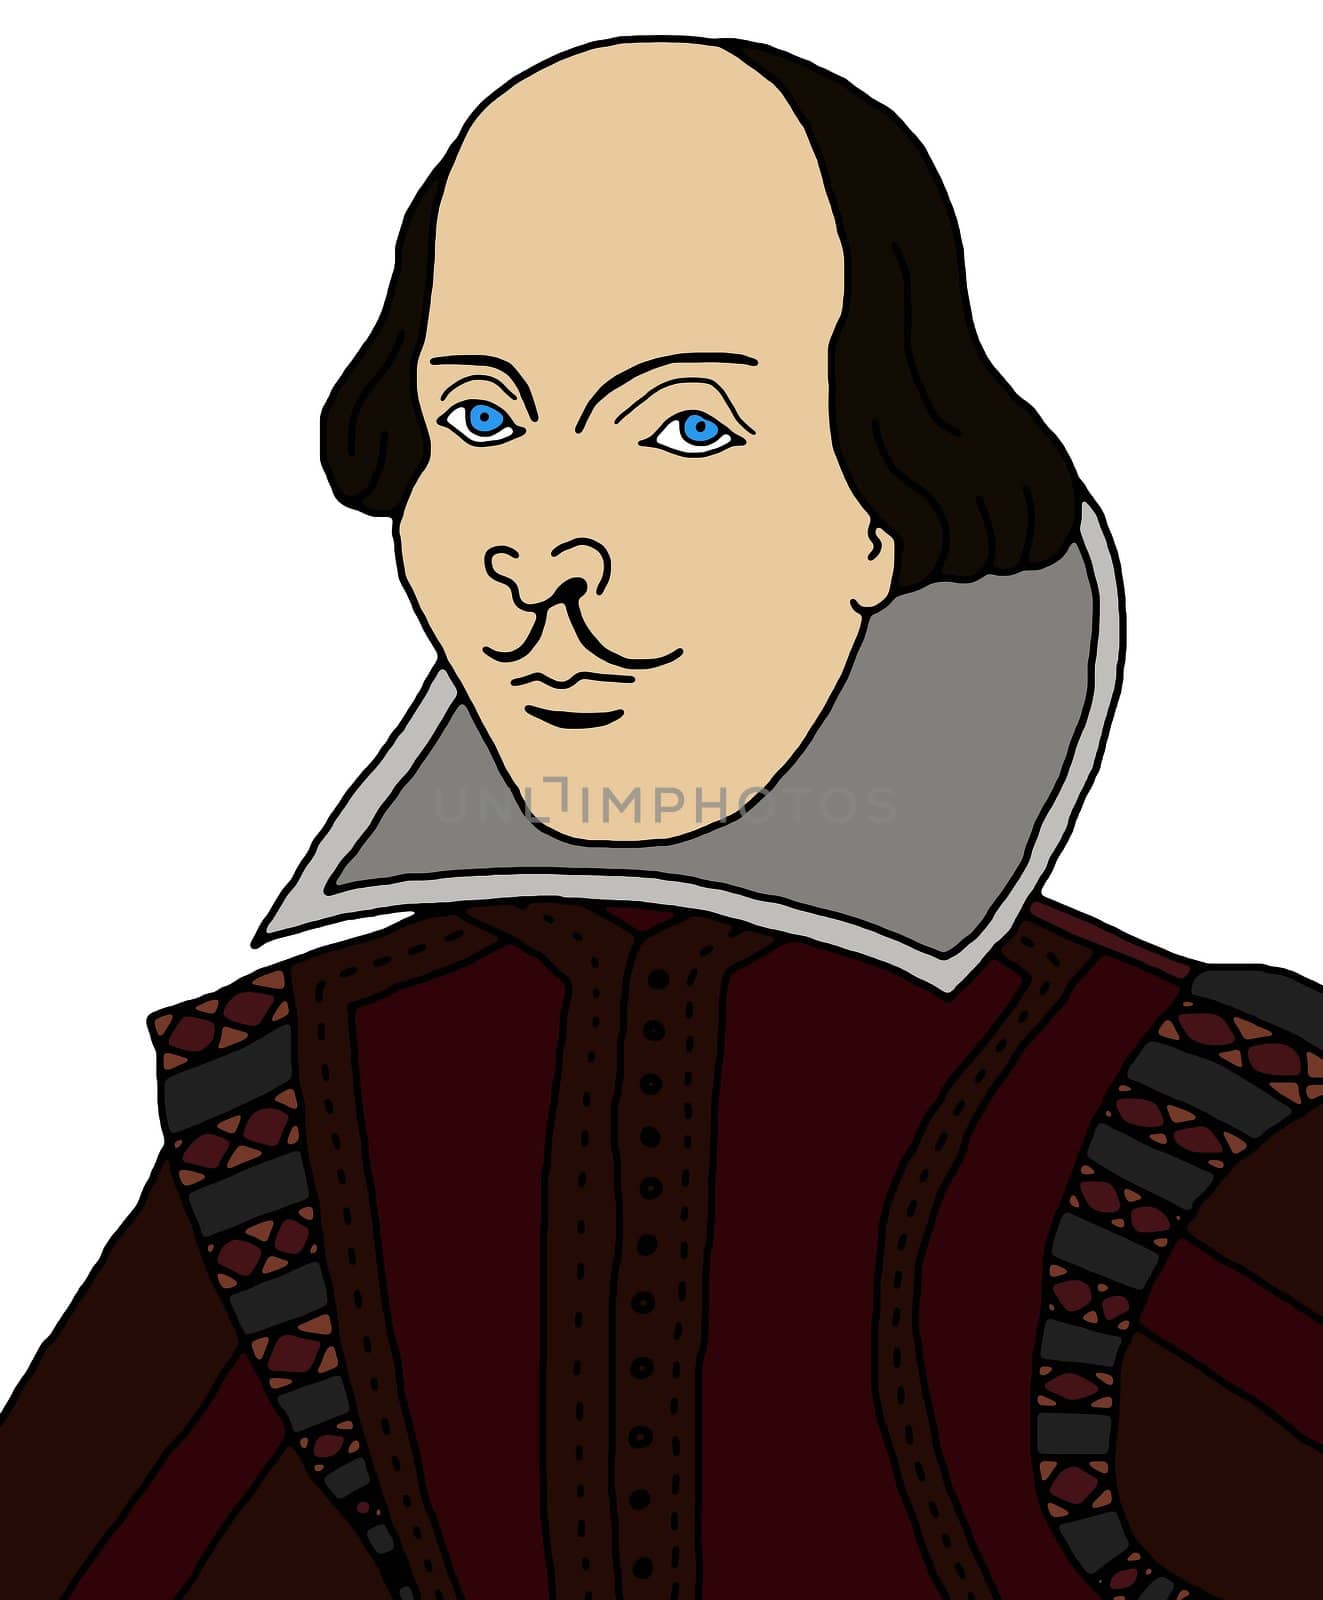 William Shakespeare by darrenwhittingham